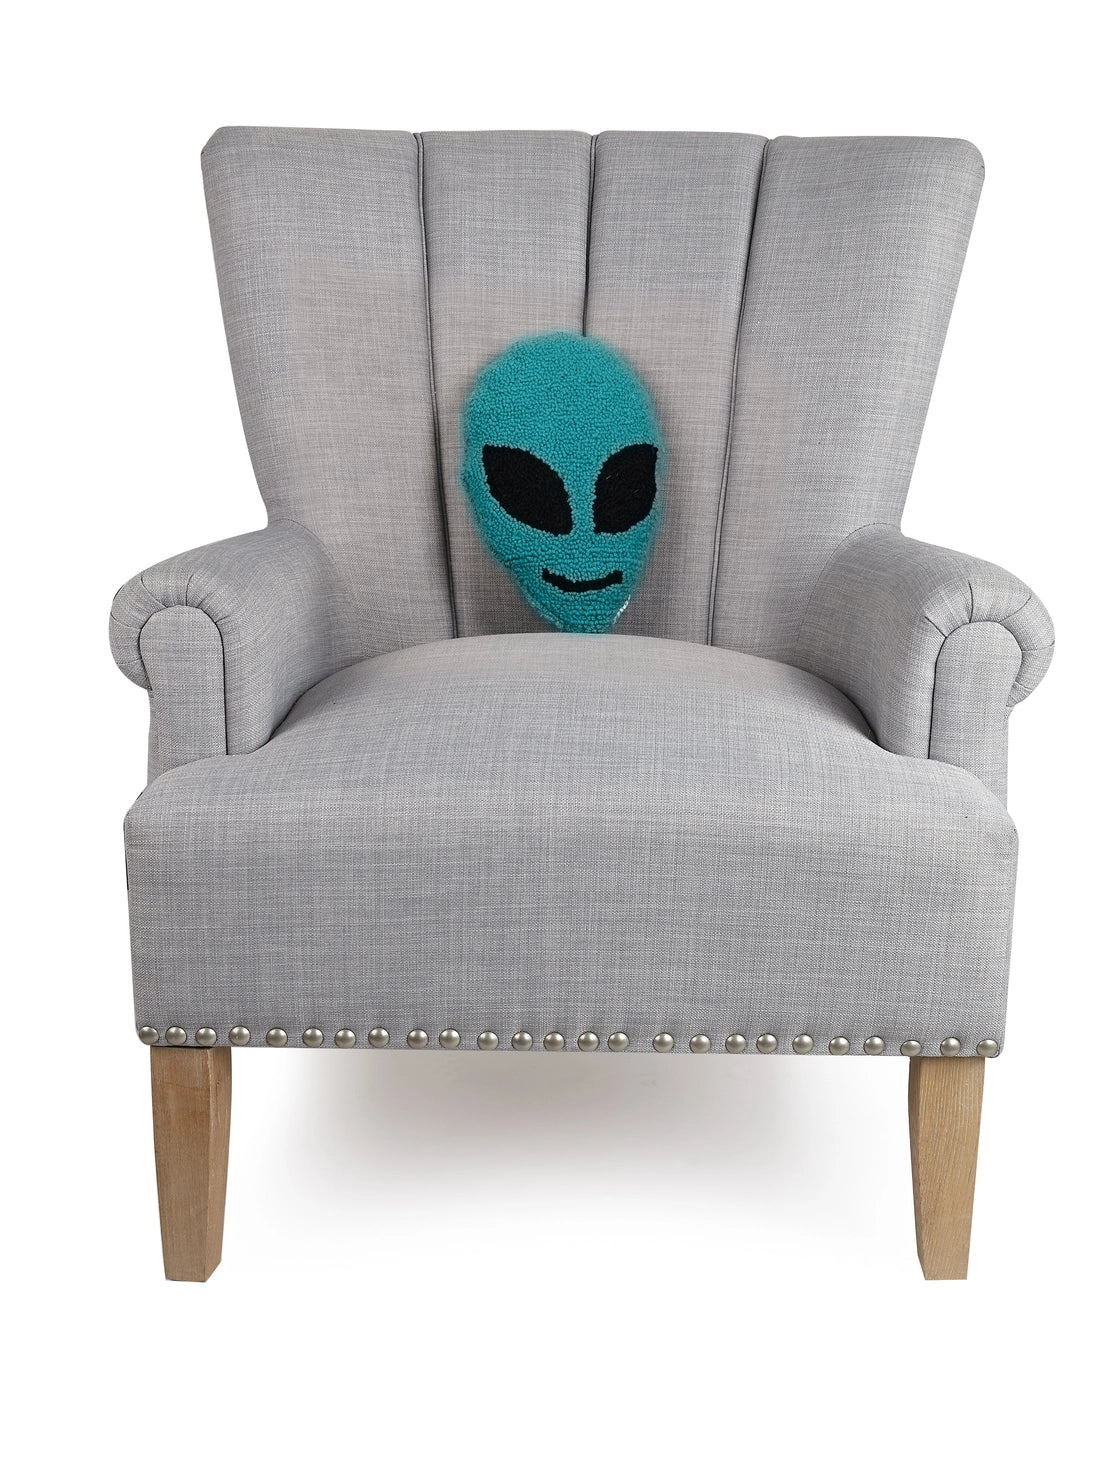 Alien Small Cushion PRE ORDER